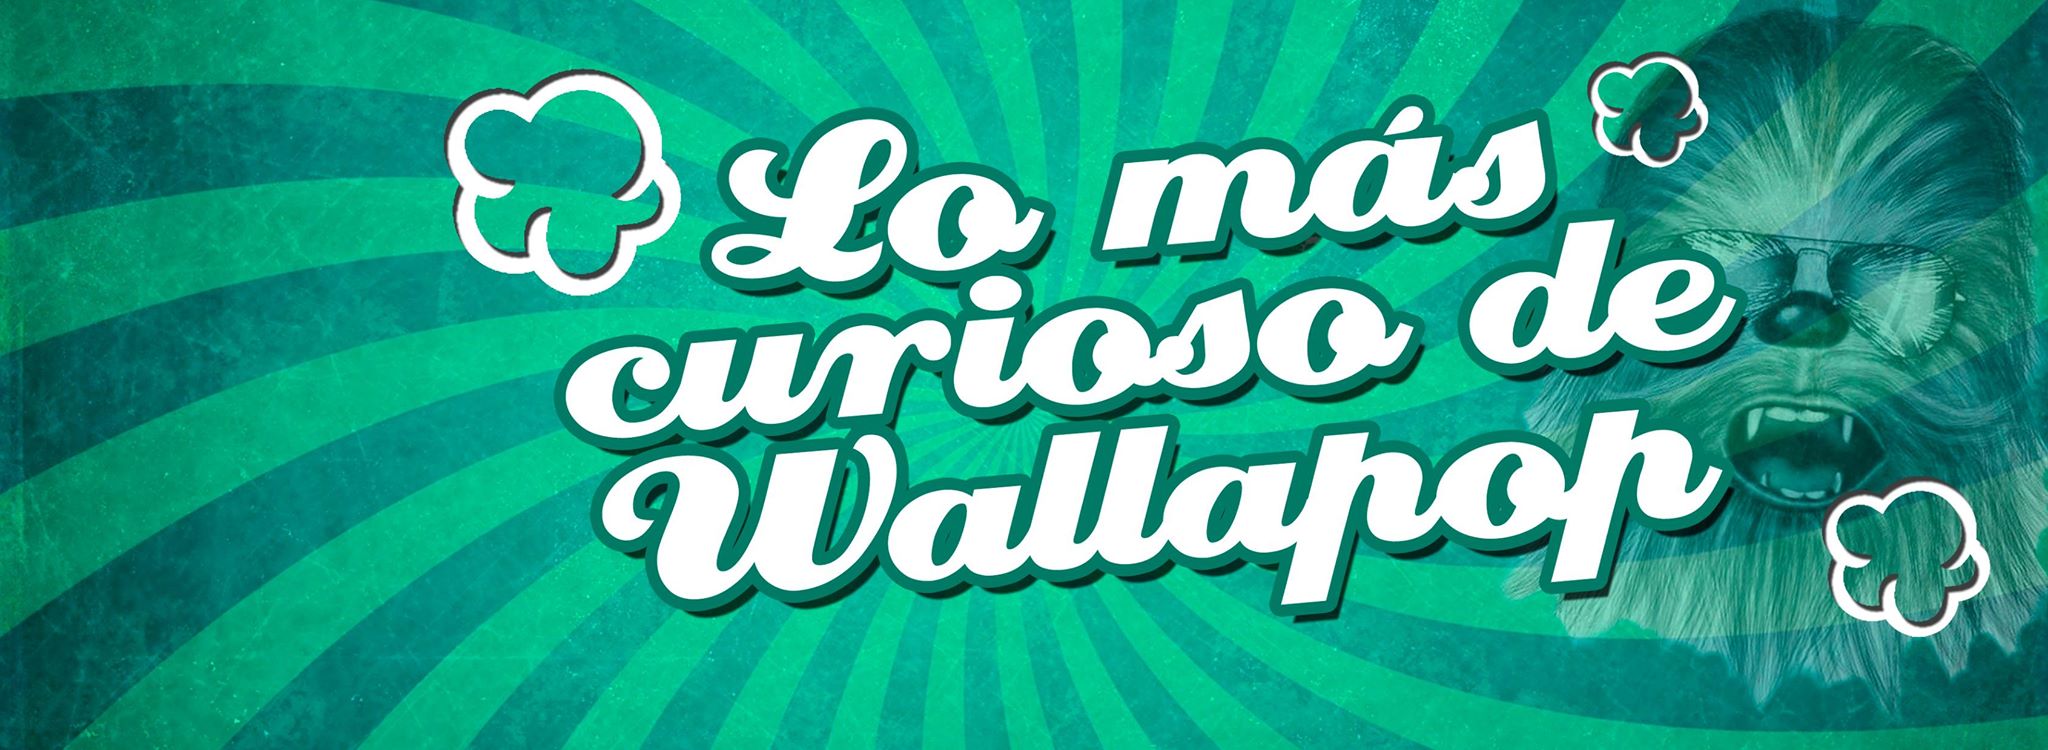 Wallapuff, lo más curioso de Wallapop.